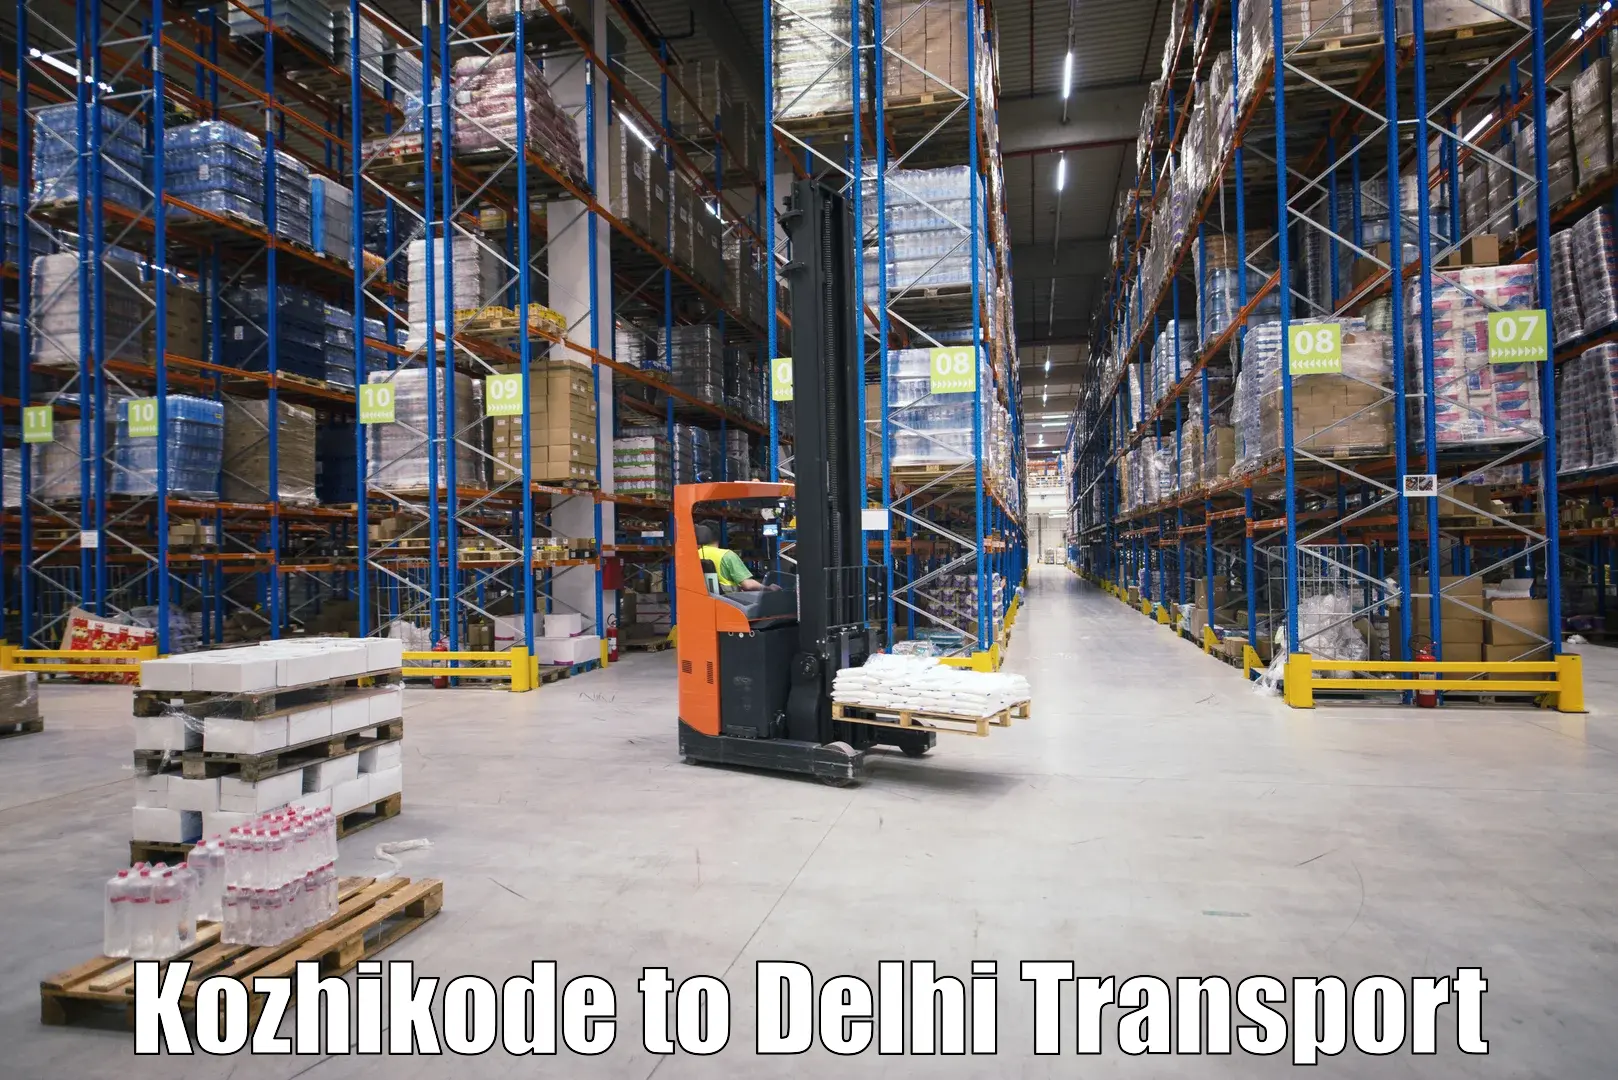 Land transport services Kozhikode to NIT Delhi